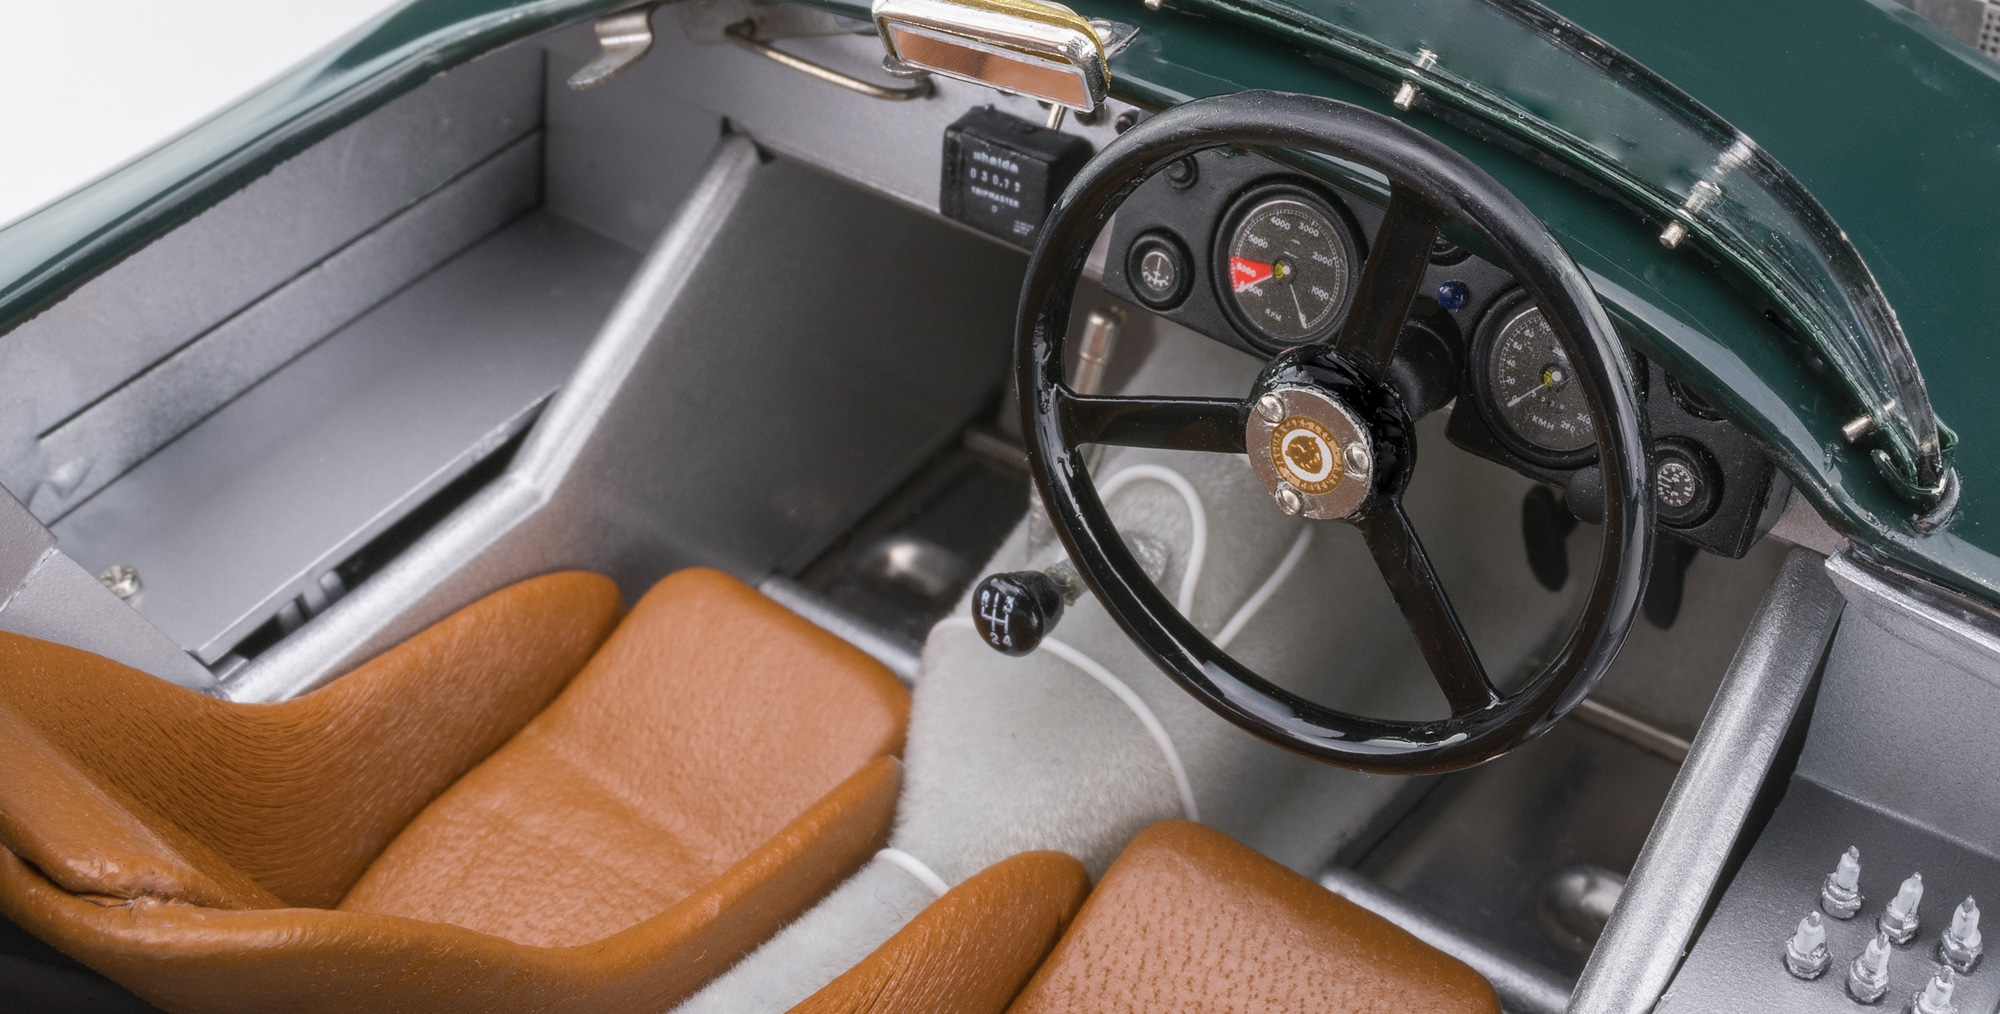 Jaguar C-Type ´52 grün british racing green